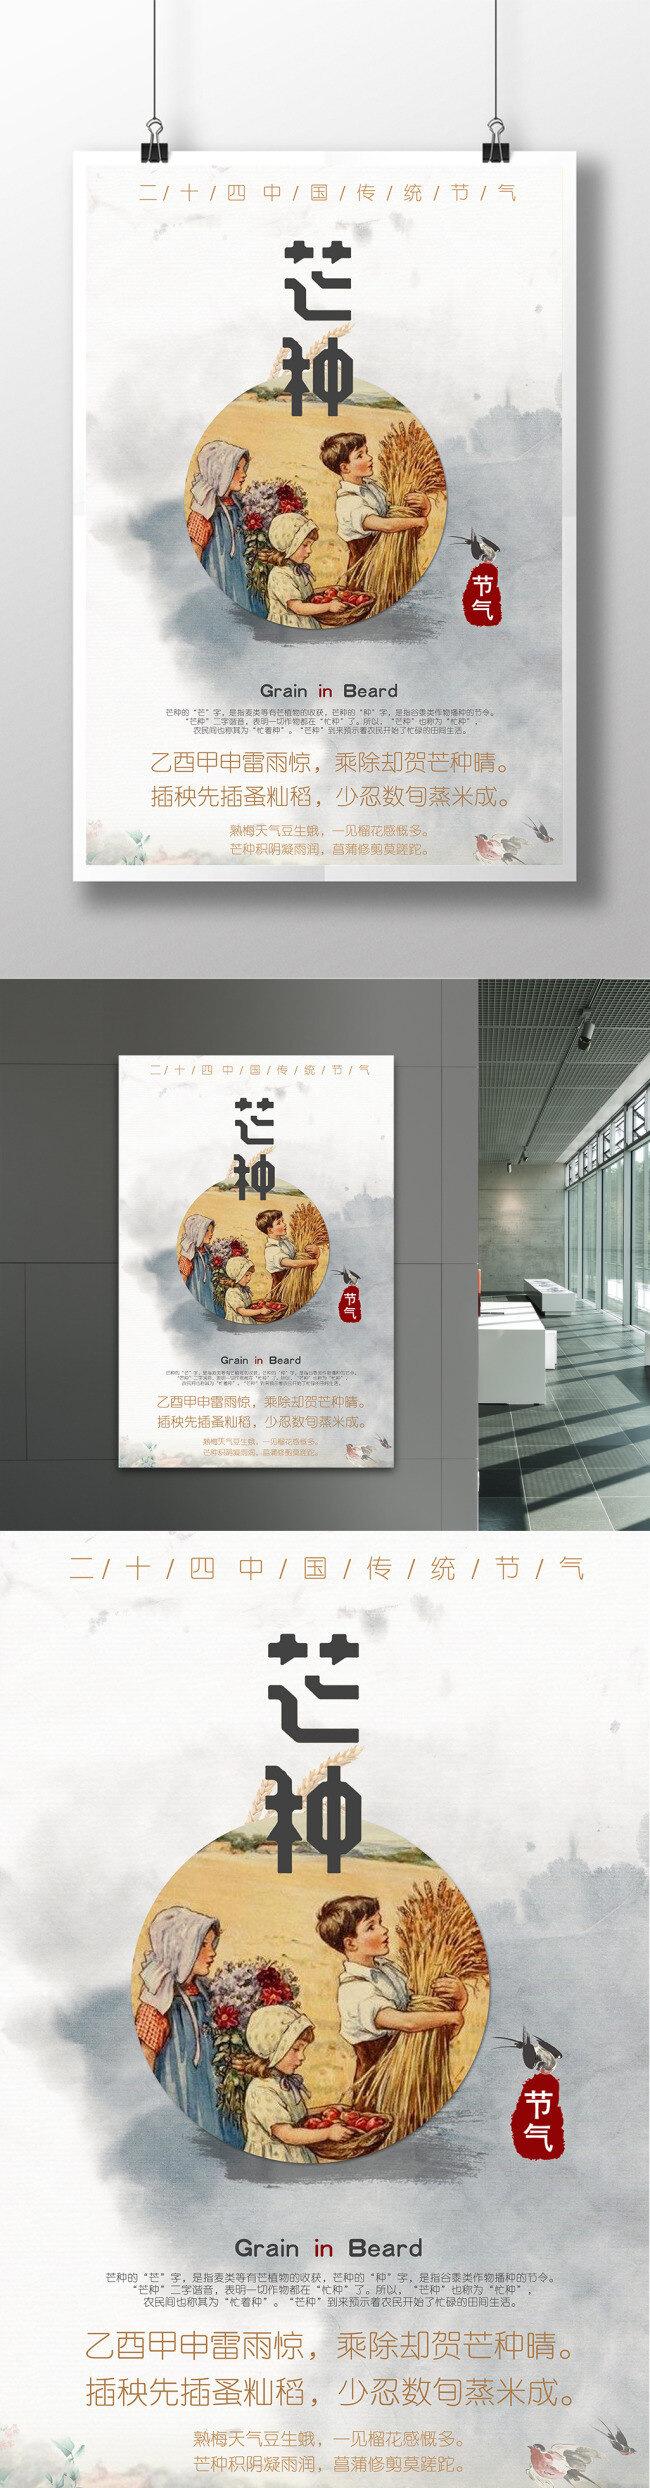 芒种促销海报 节气海报 促销 产品宣传 中国风 海报背景 诗句素材 水墨背景